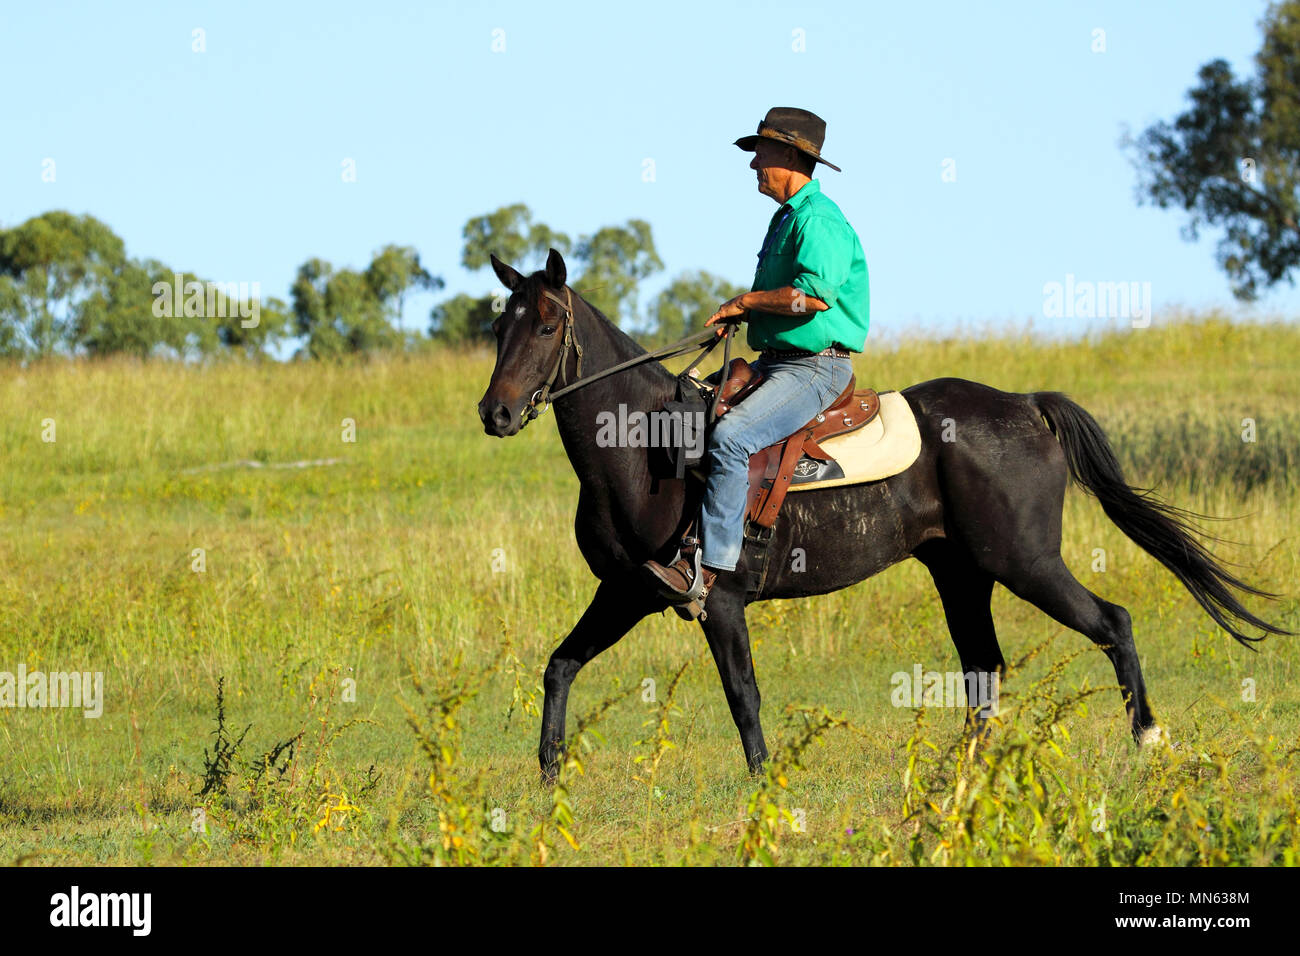 Un vaquero en camisa verde a caballo en una granja. Foto de stock